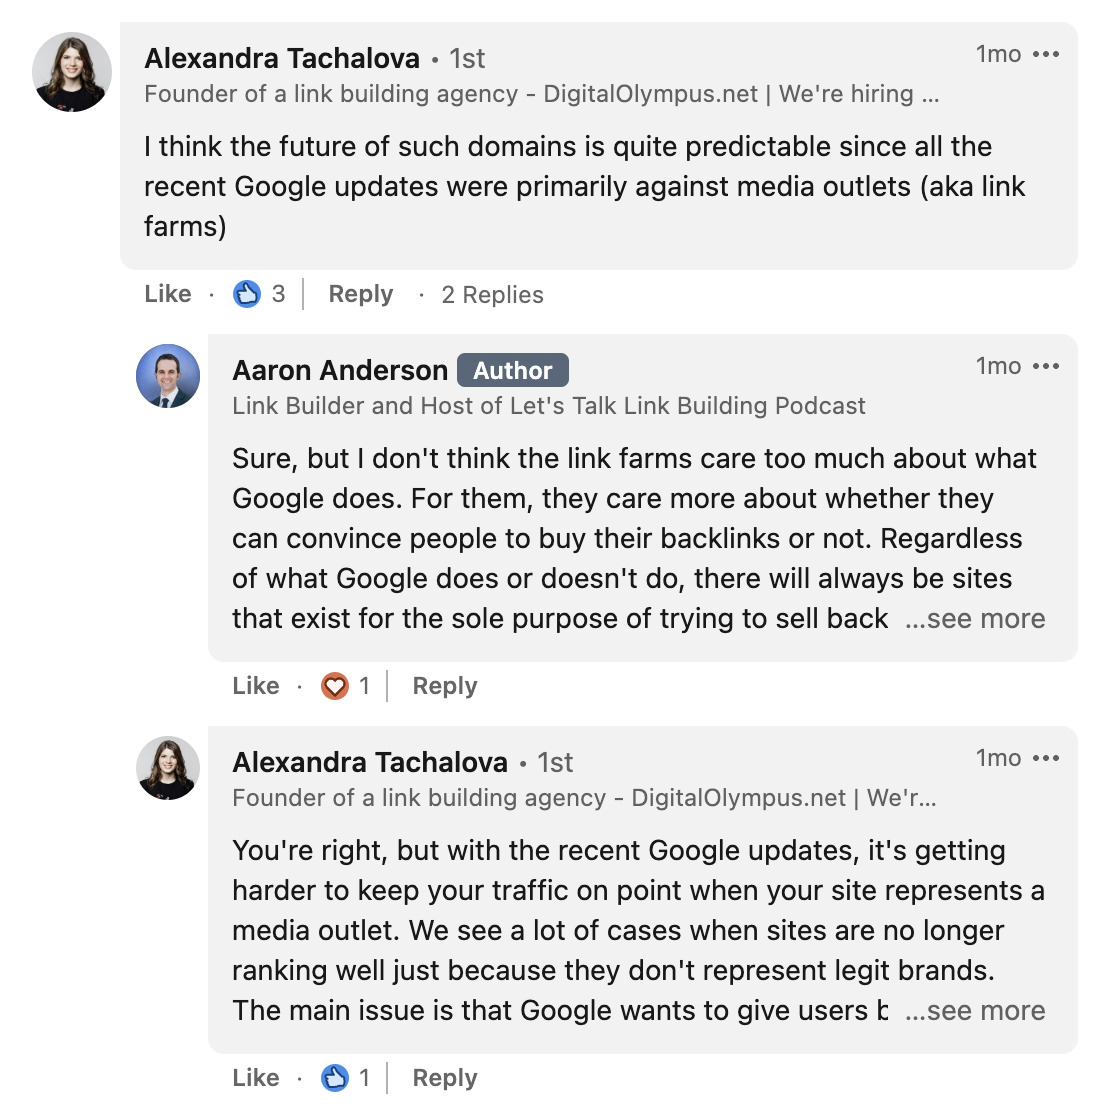 Interactie tussen Alexandra Tachalova en Aaron Anderson in LinkedIn-opmerkingen